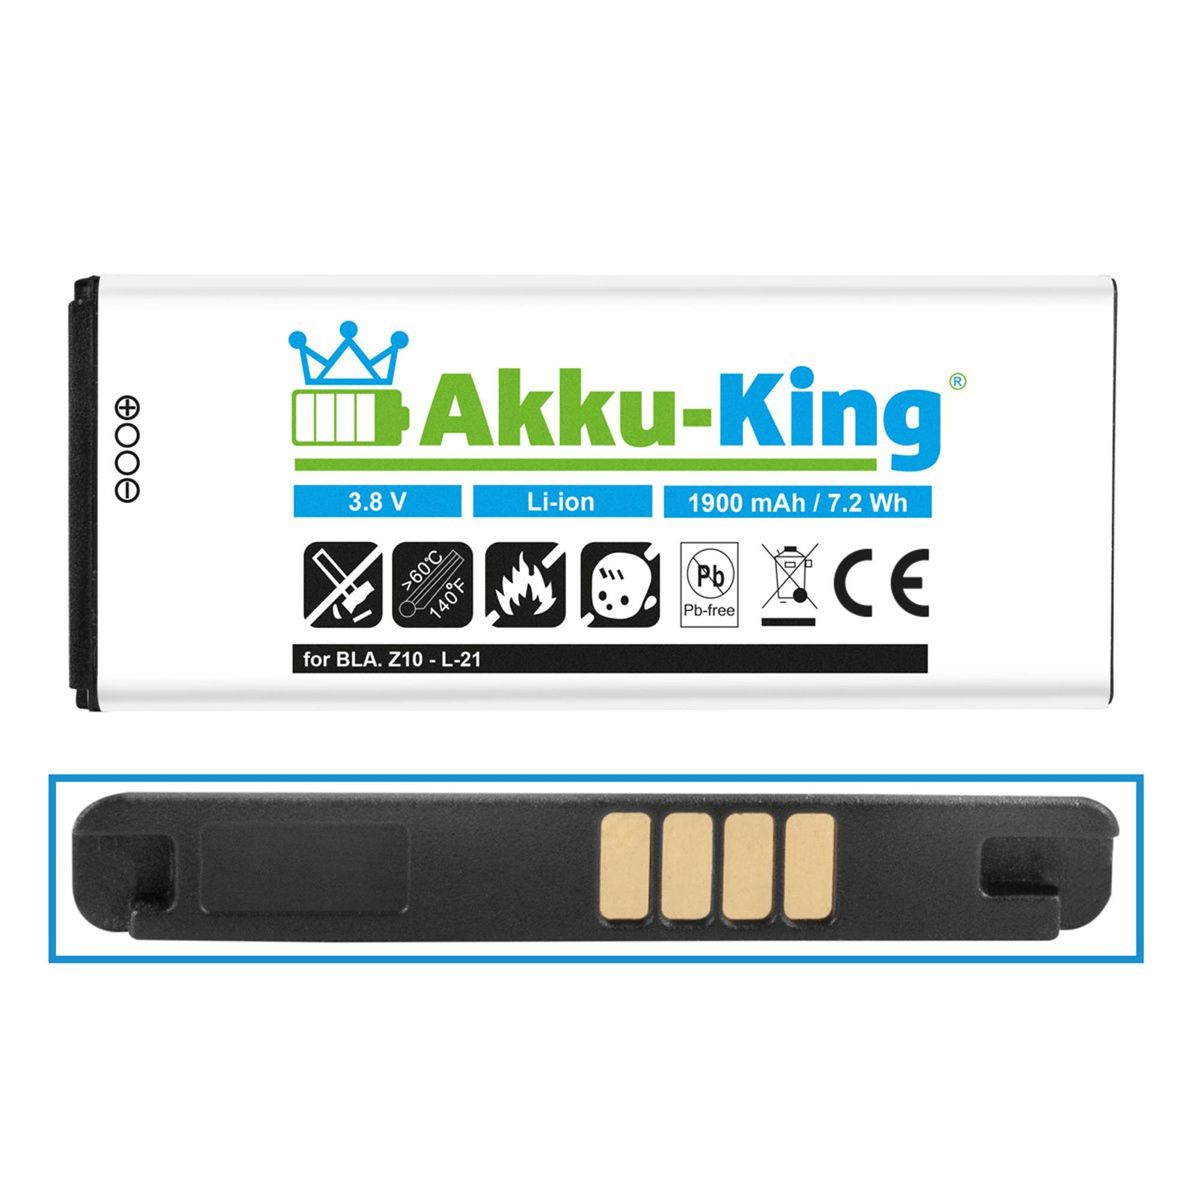 AKKU-KING Akku für BlackBerry 1900mAh L-S1 3.8 Li-Ion Volt, Handy-Akku